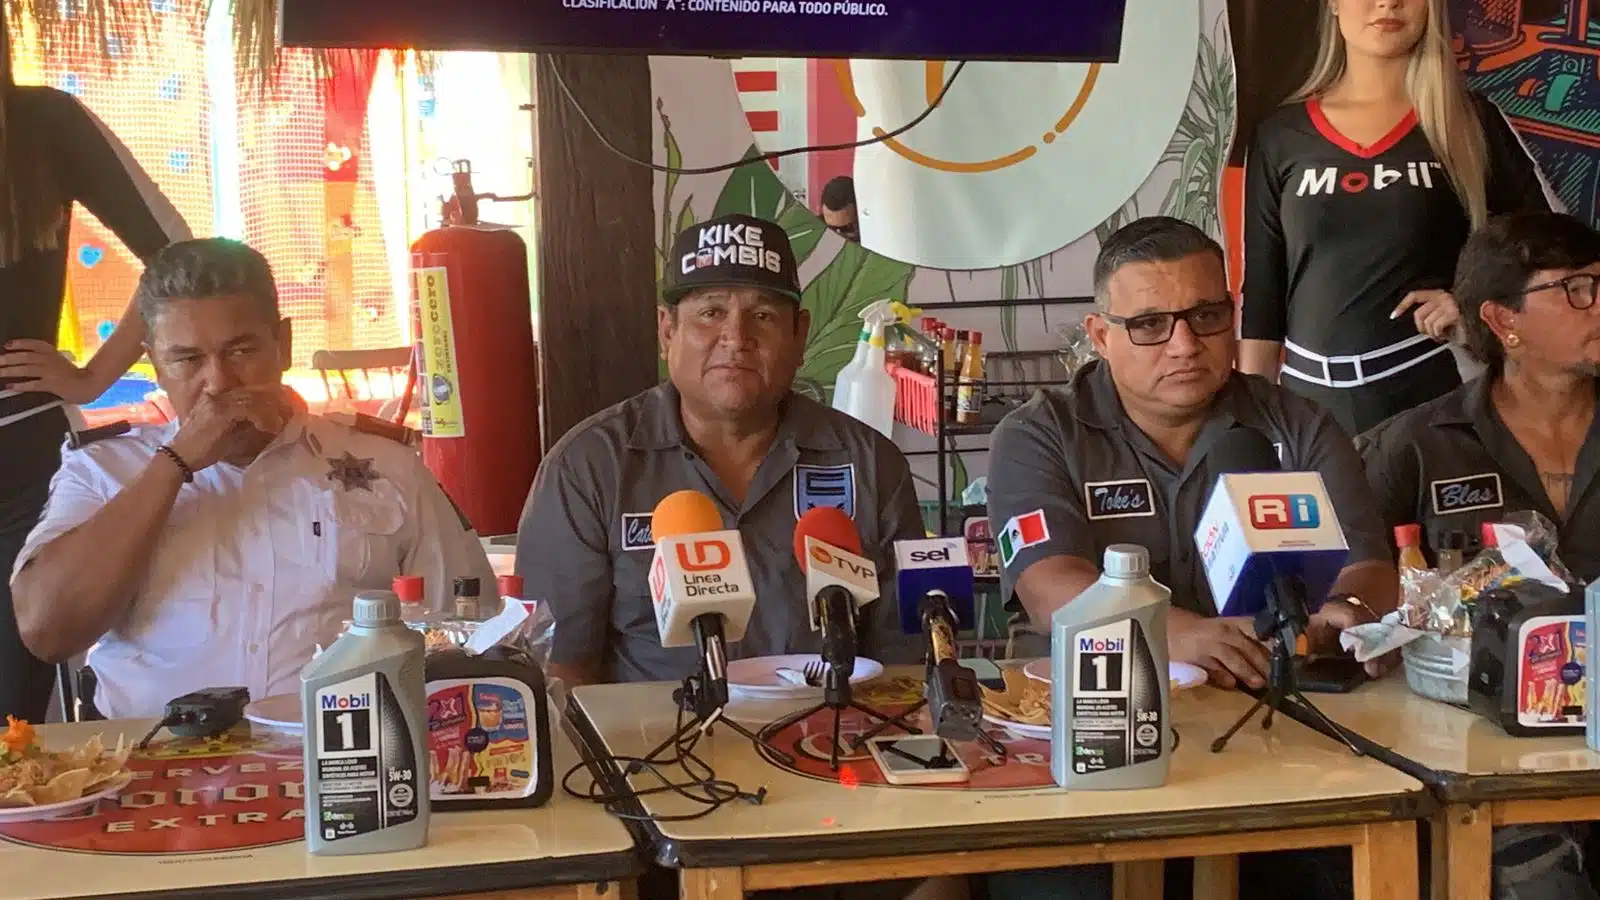 VIDEO: ¡Viene la “Vochomanía”! Cientos de vocheros “inundarán” Mazatlán